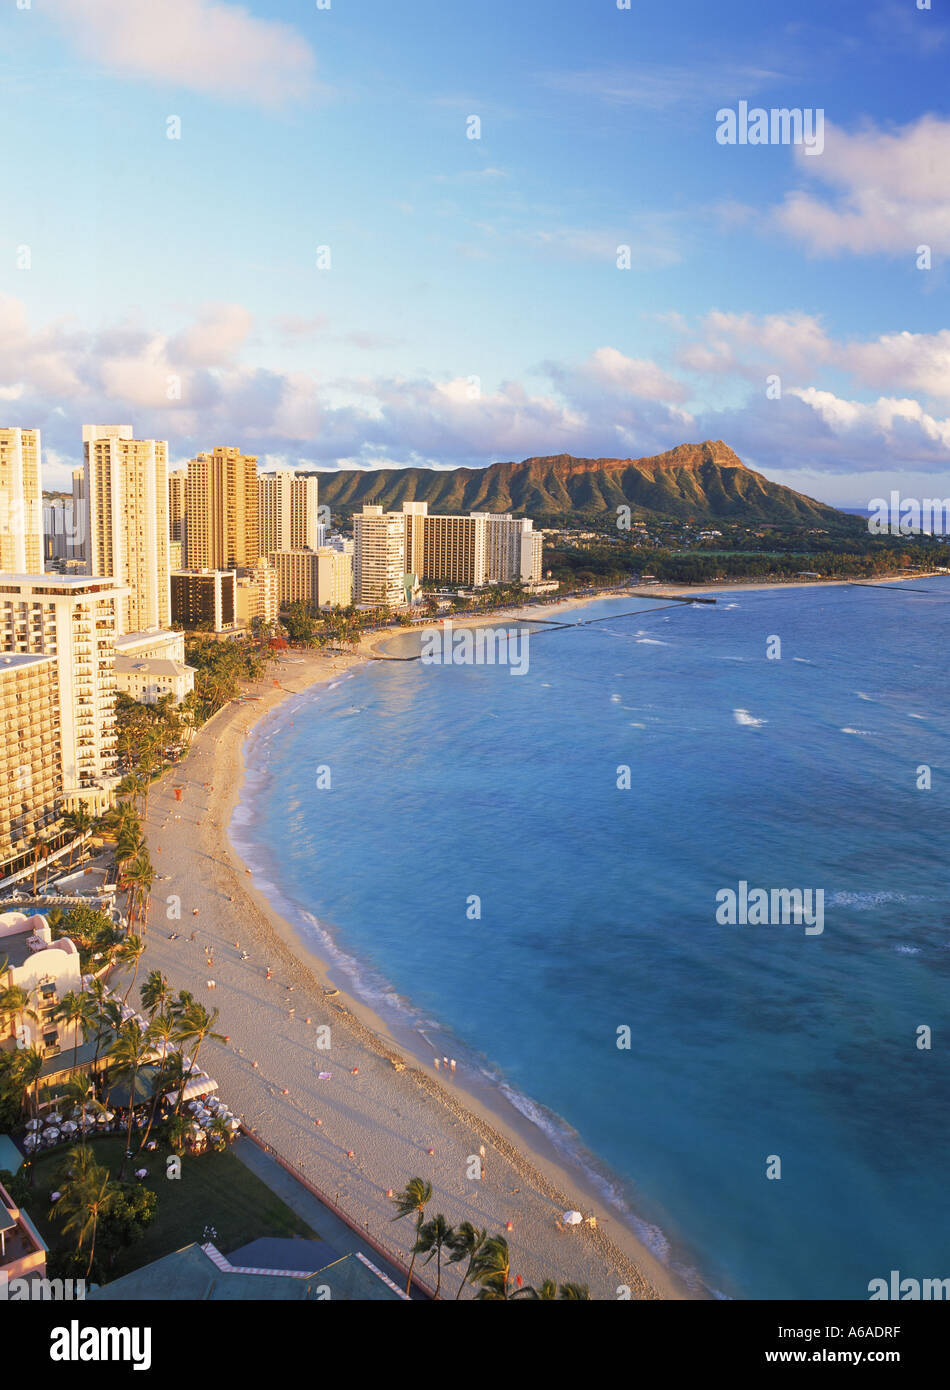 La plage de Waikiki et Diamond Head en face de la plage avec des hôtels au coucher du soleil à Honolulu sur l'Île Oahu Hawaii Banque D'Images